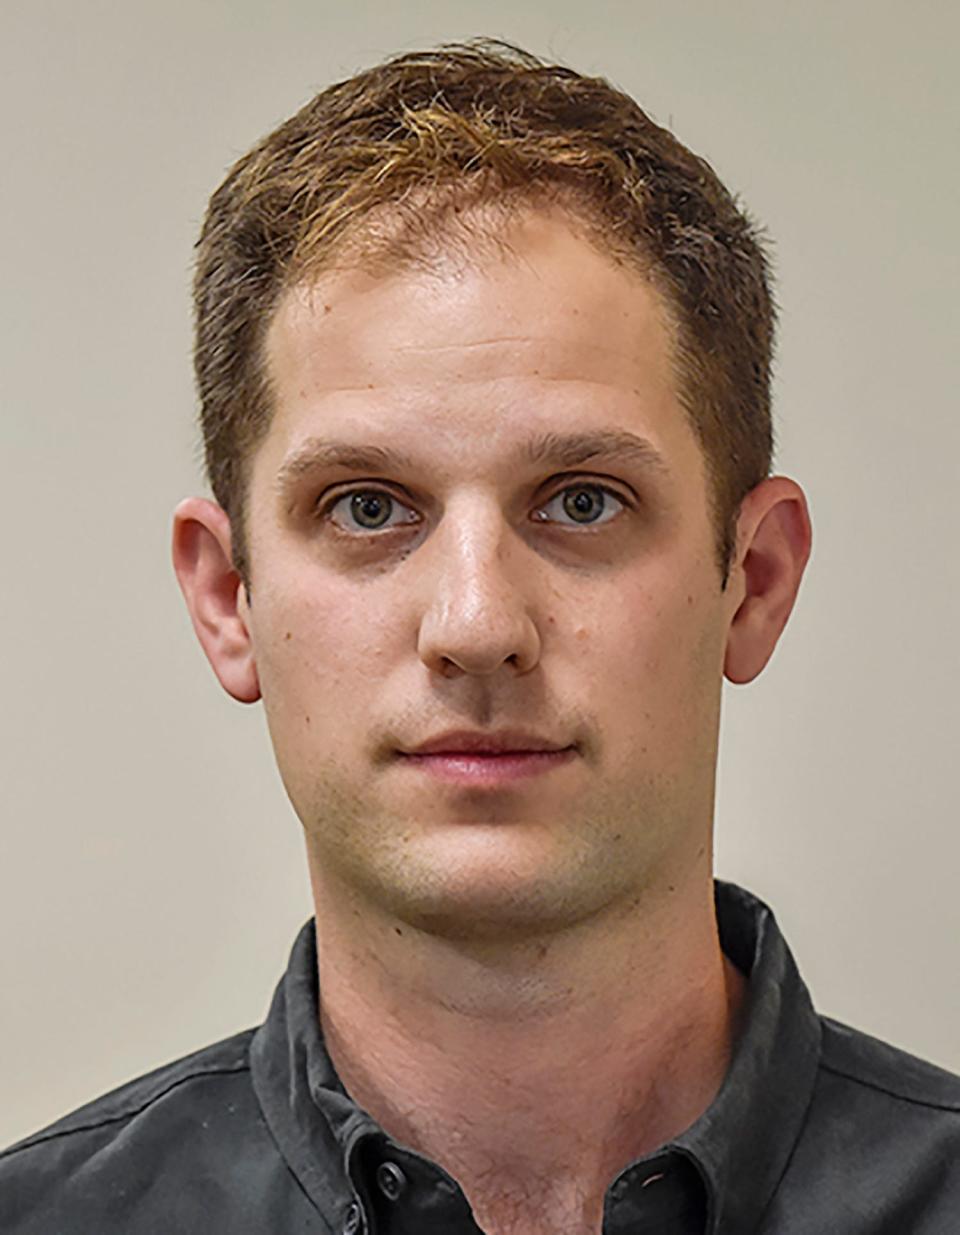 An undated ID photo of journalist Evan Gershkovich.